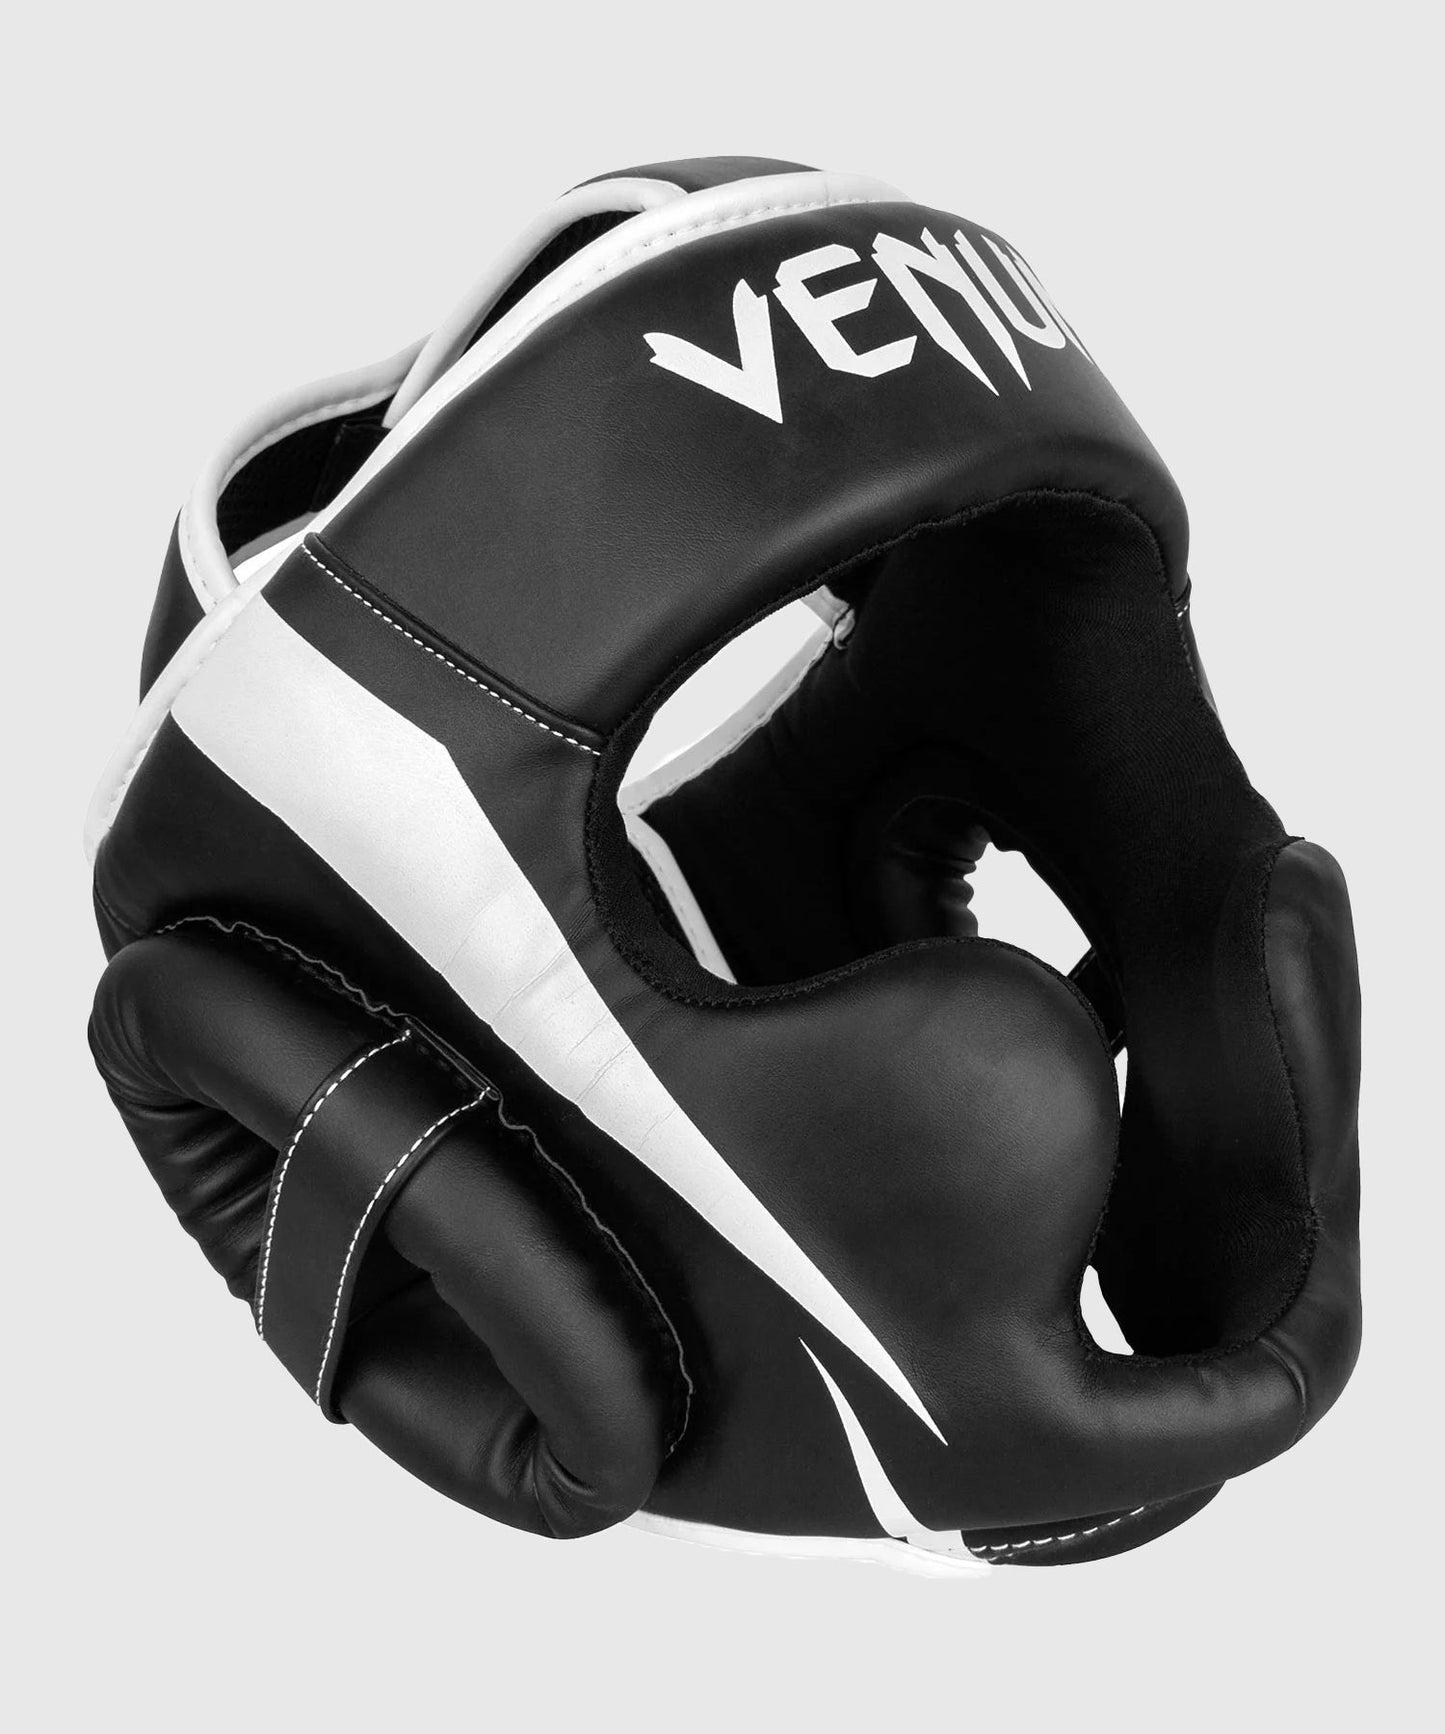 Venum Elite Helm - Schwarz/Weiß